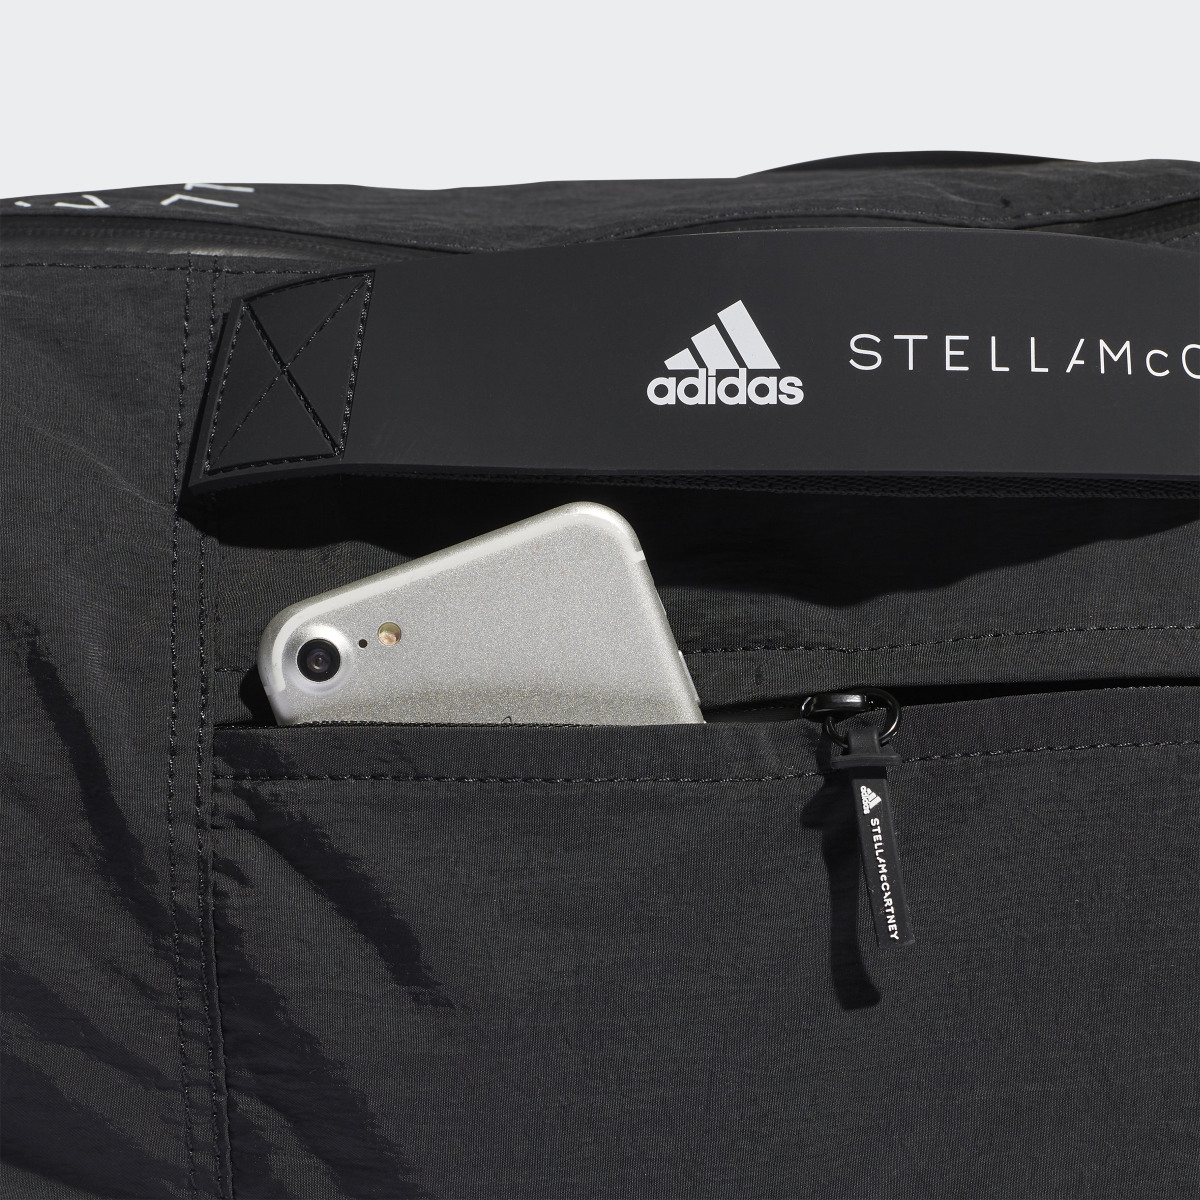 Adidas by Stella McCartney Studio Tasche. 5